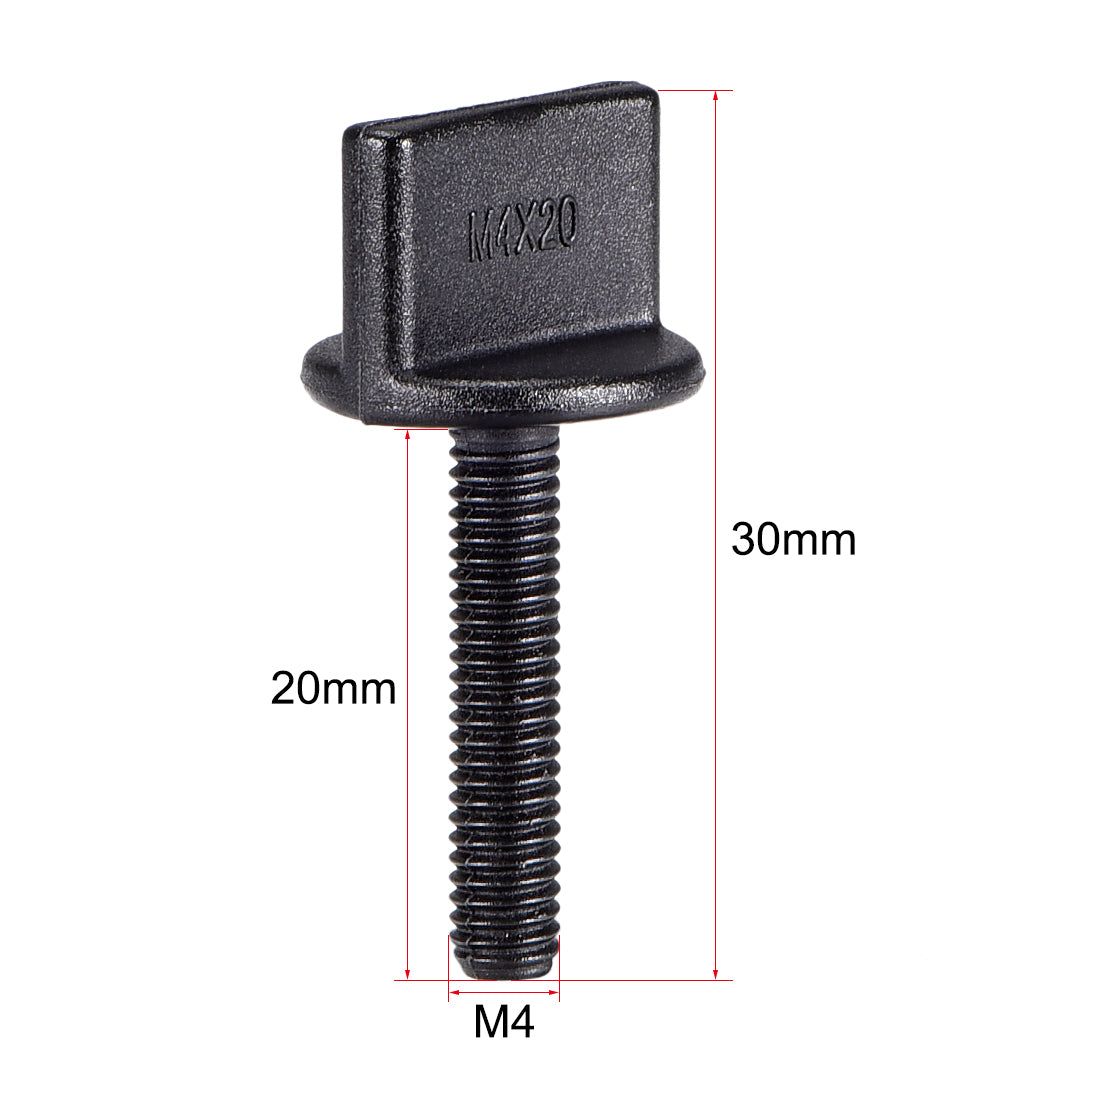 uxcell Uxcell M4 x 20mm Thumb Screw Bolt Nylon Plastic Screws Metric Thread 5 Pcs